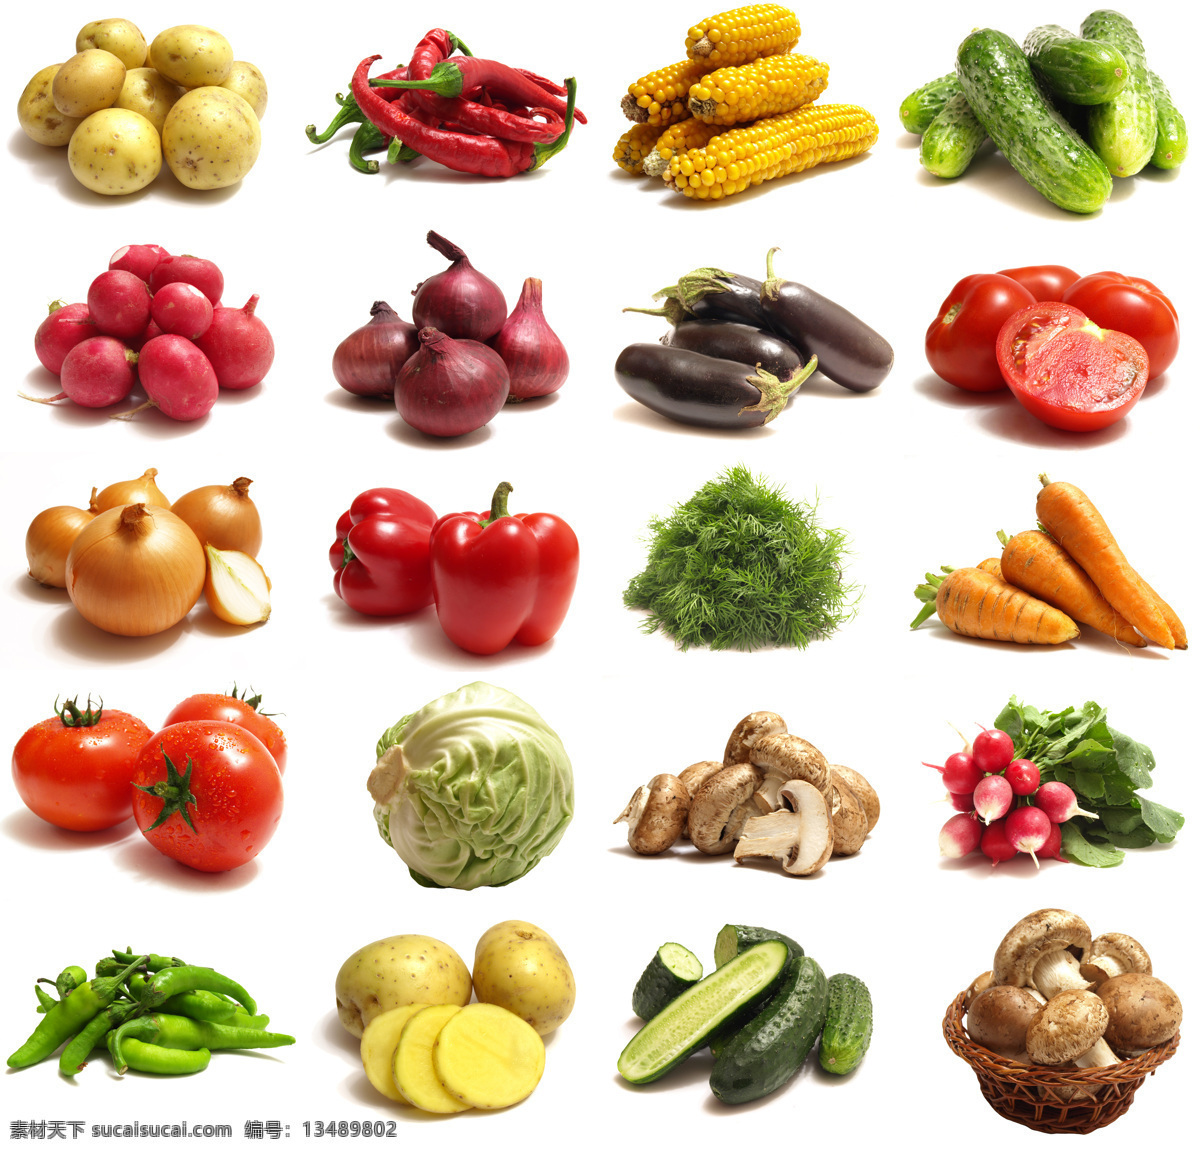 水果 蔬菜 土豆 黄瓜 辣椒 西红柿 萝卜 番茄 蘑菇 茄子 玉米 洋葱 包心菜 摄影图 高清图片 水果图片 餐饮美食